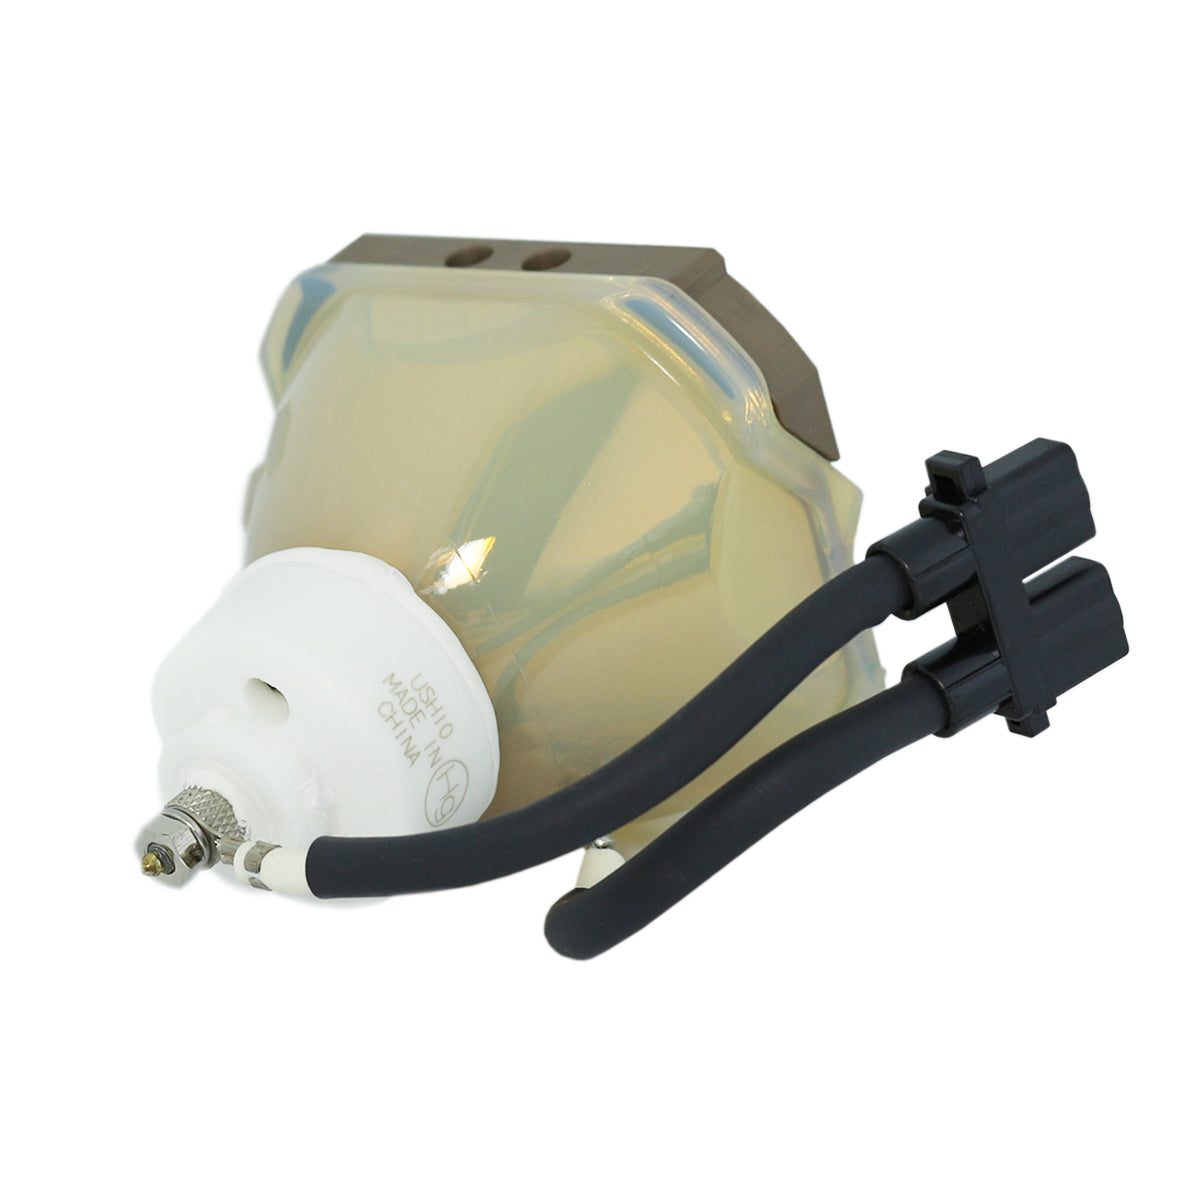 Boxlight CP731i-930 Ushio Projector Bare Lamp